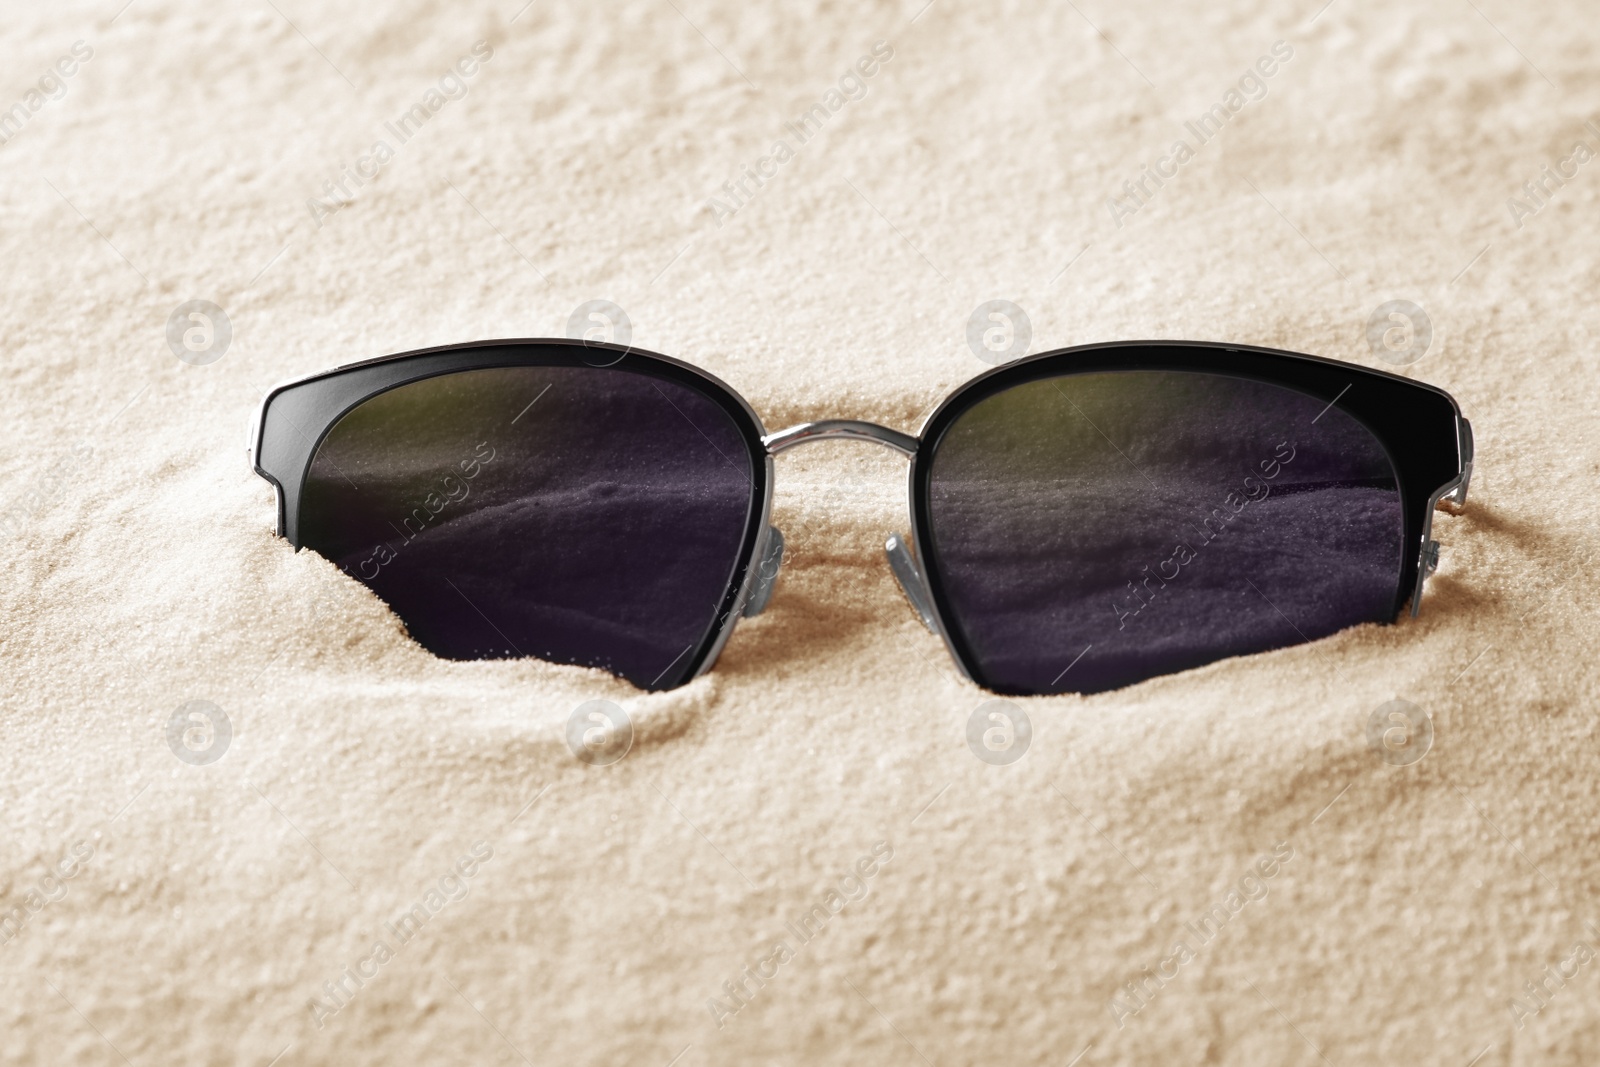 Photo of Stylish sunglasses on white sand. Fashionable accessory